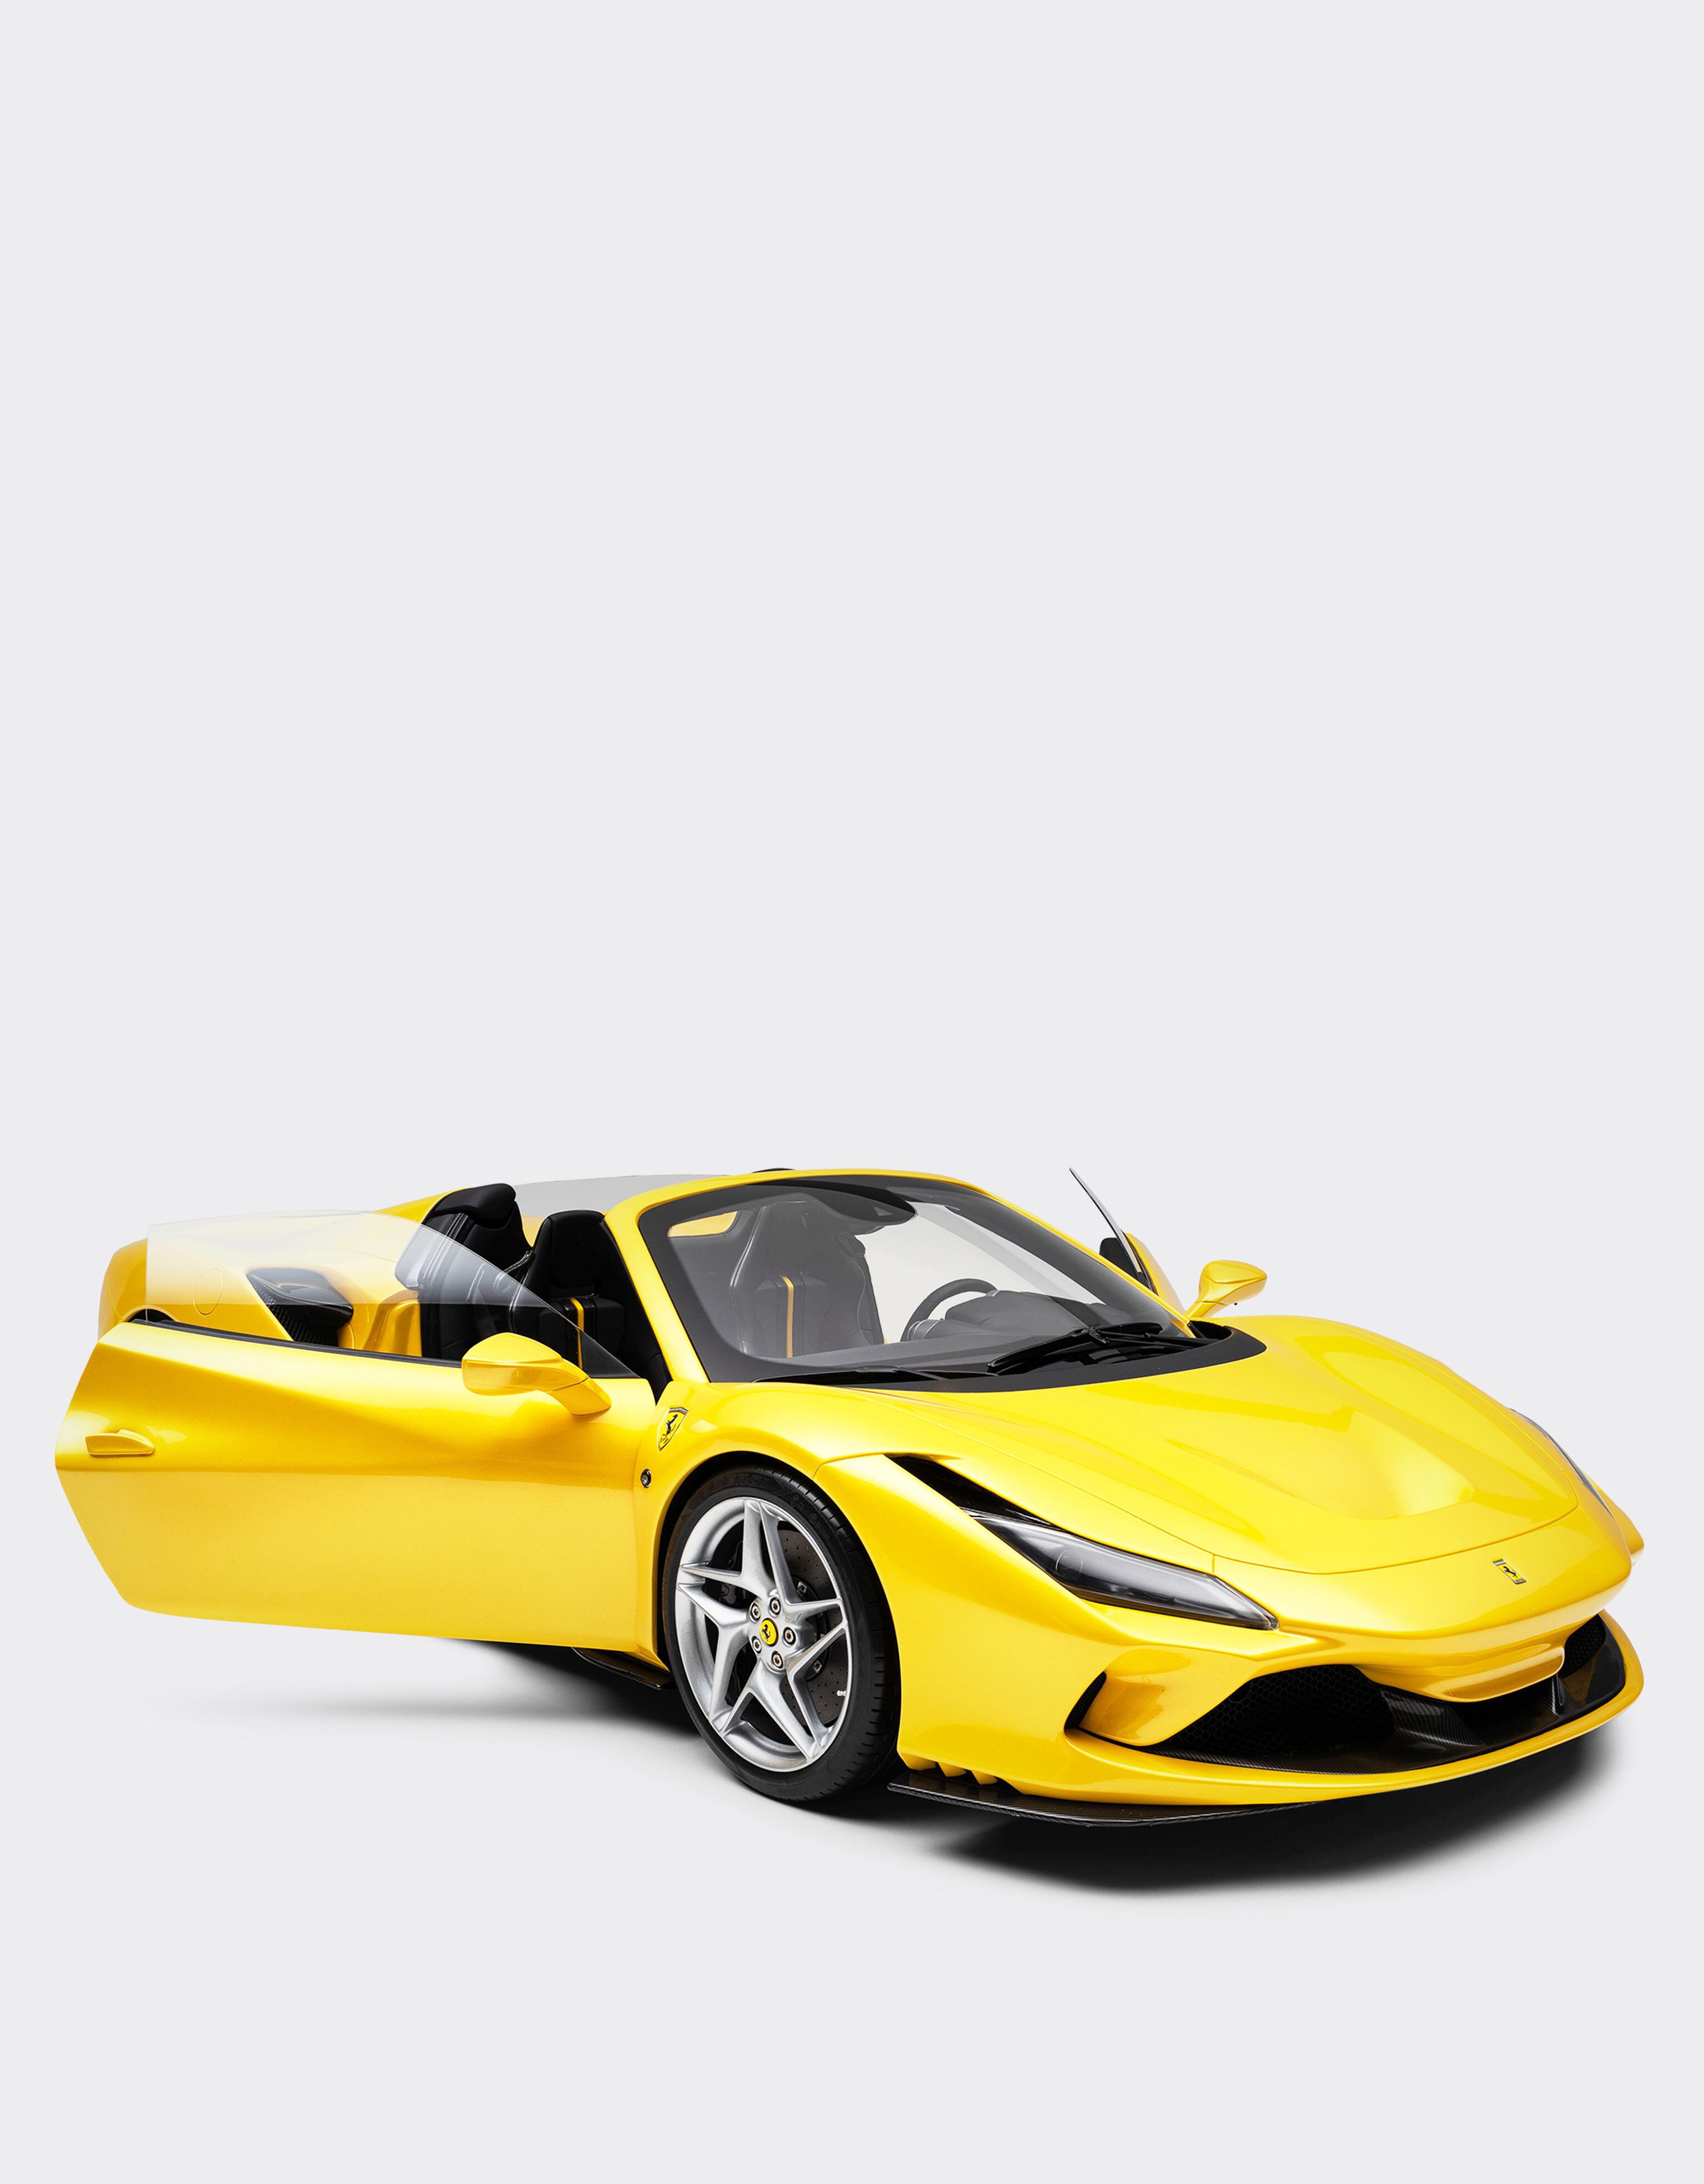 Ferrari Modelo Ferrari F8 Tributo a escala 1:8 Amarillo F0079f